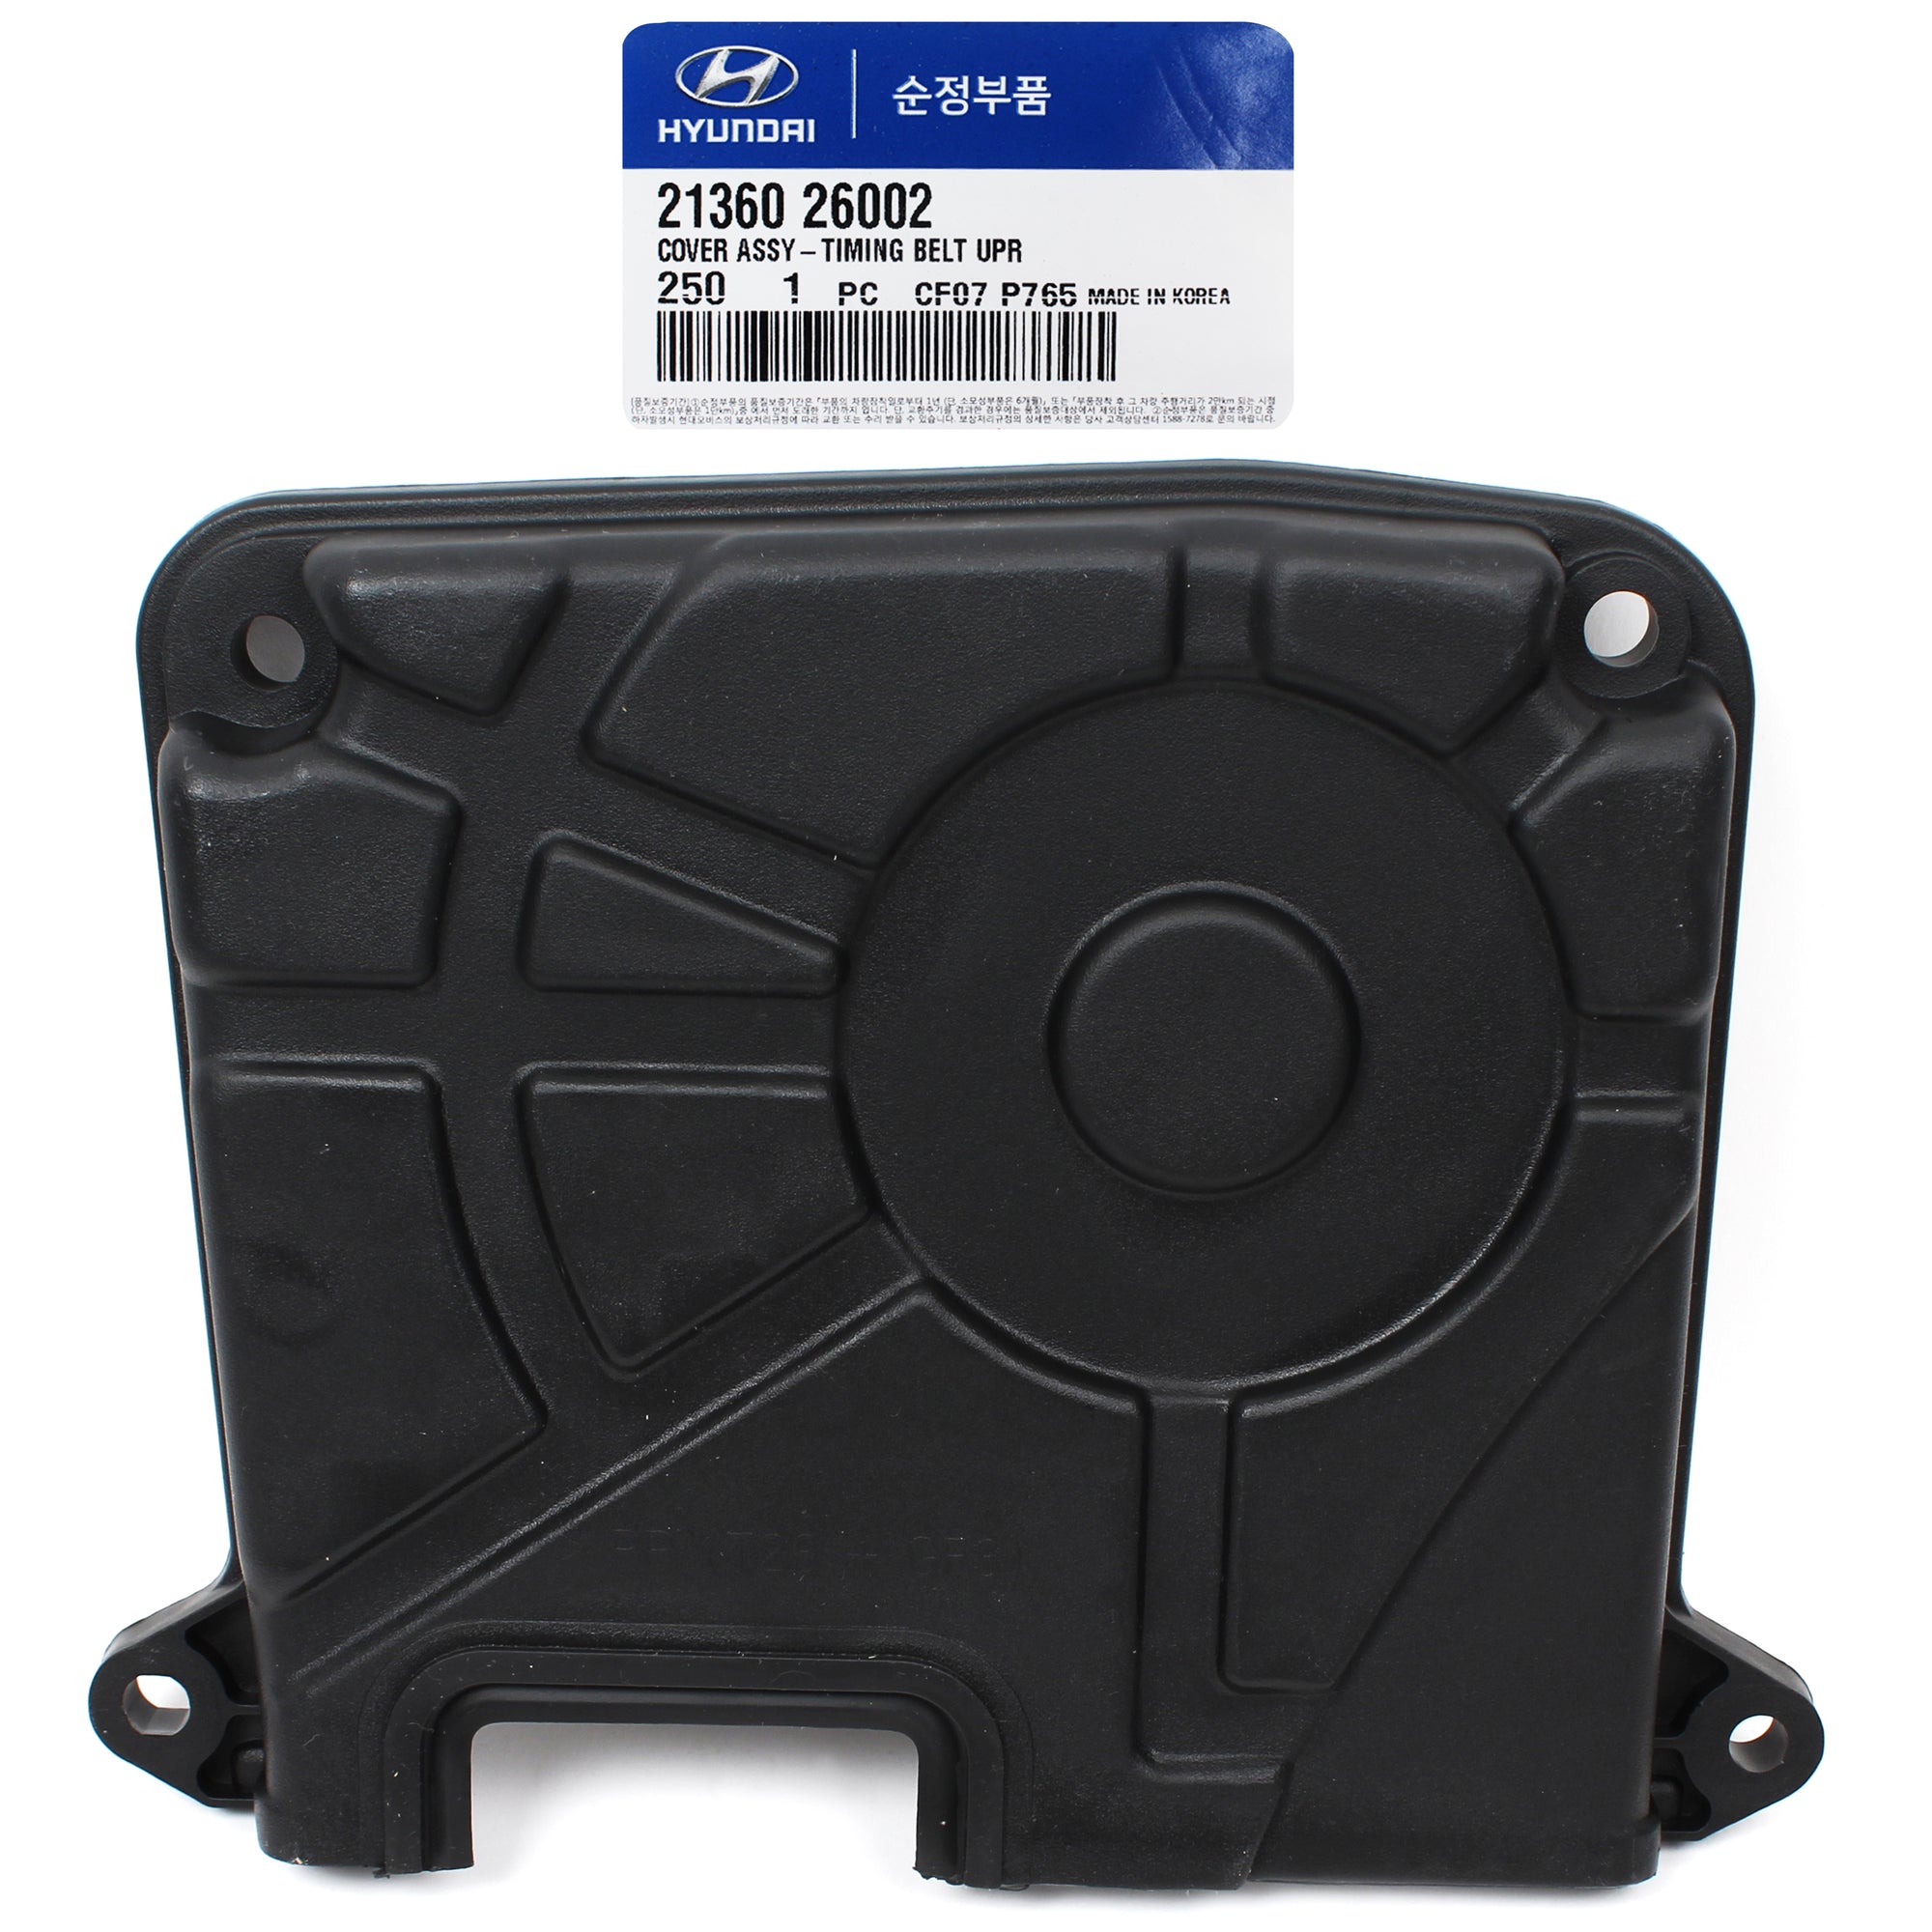 GENUINE Timing Belt Cover UPPER for 01-11 Hyundai Accent Kia Rio Rio5 2136026002